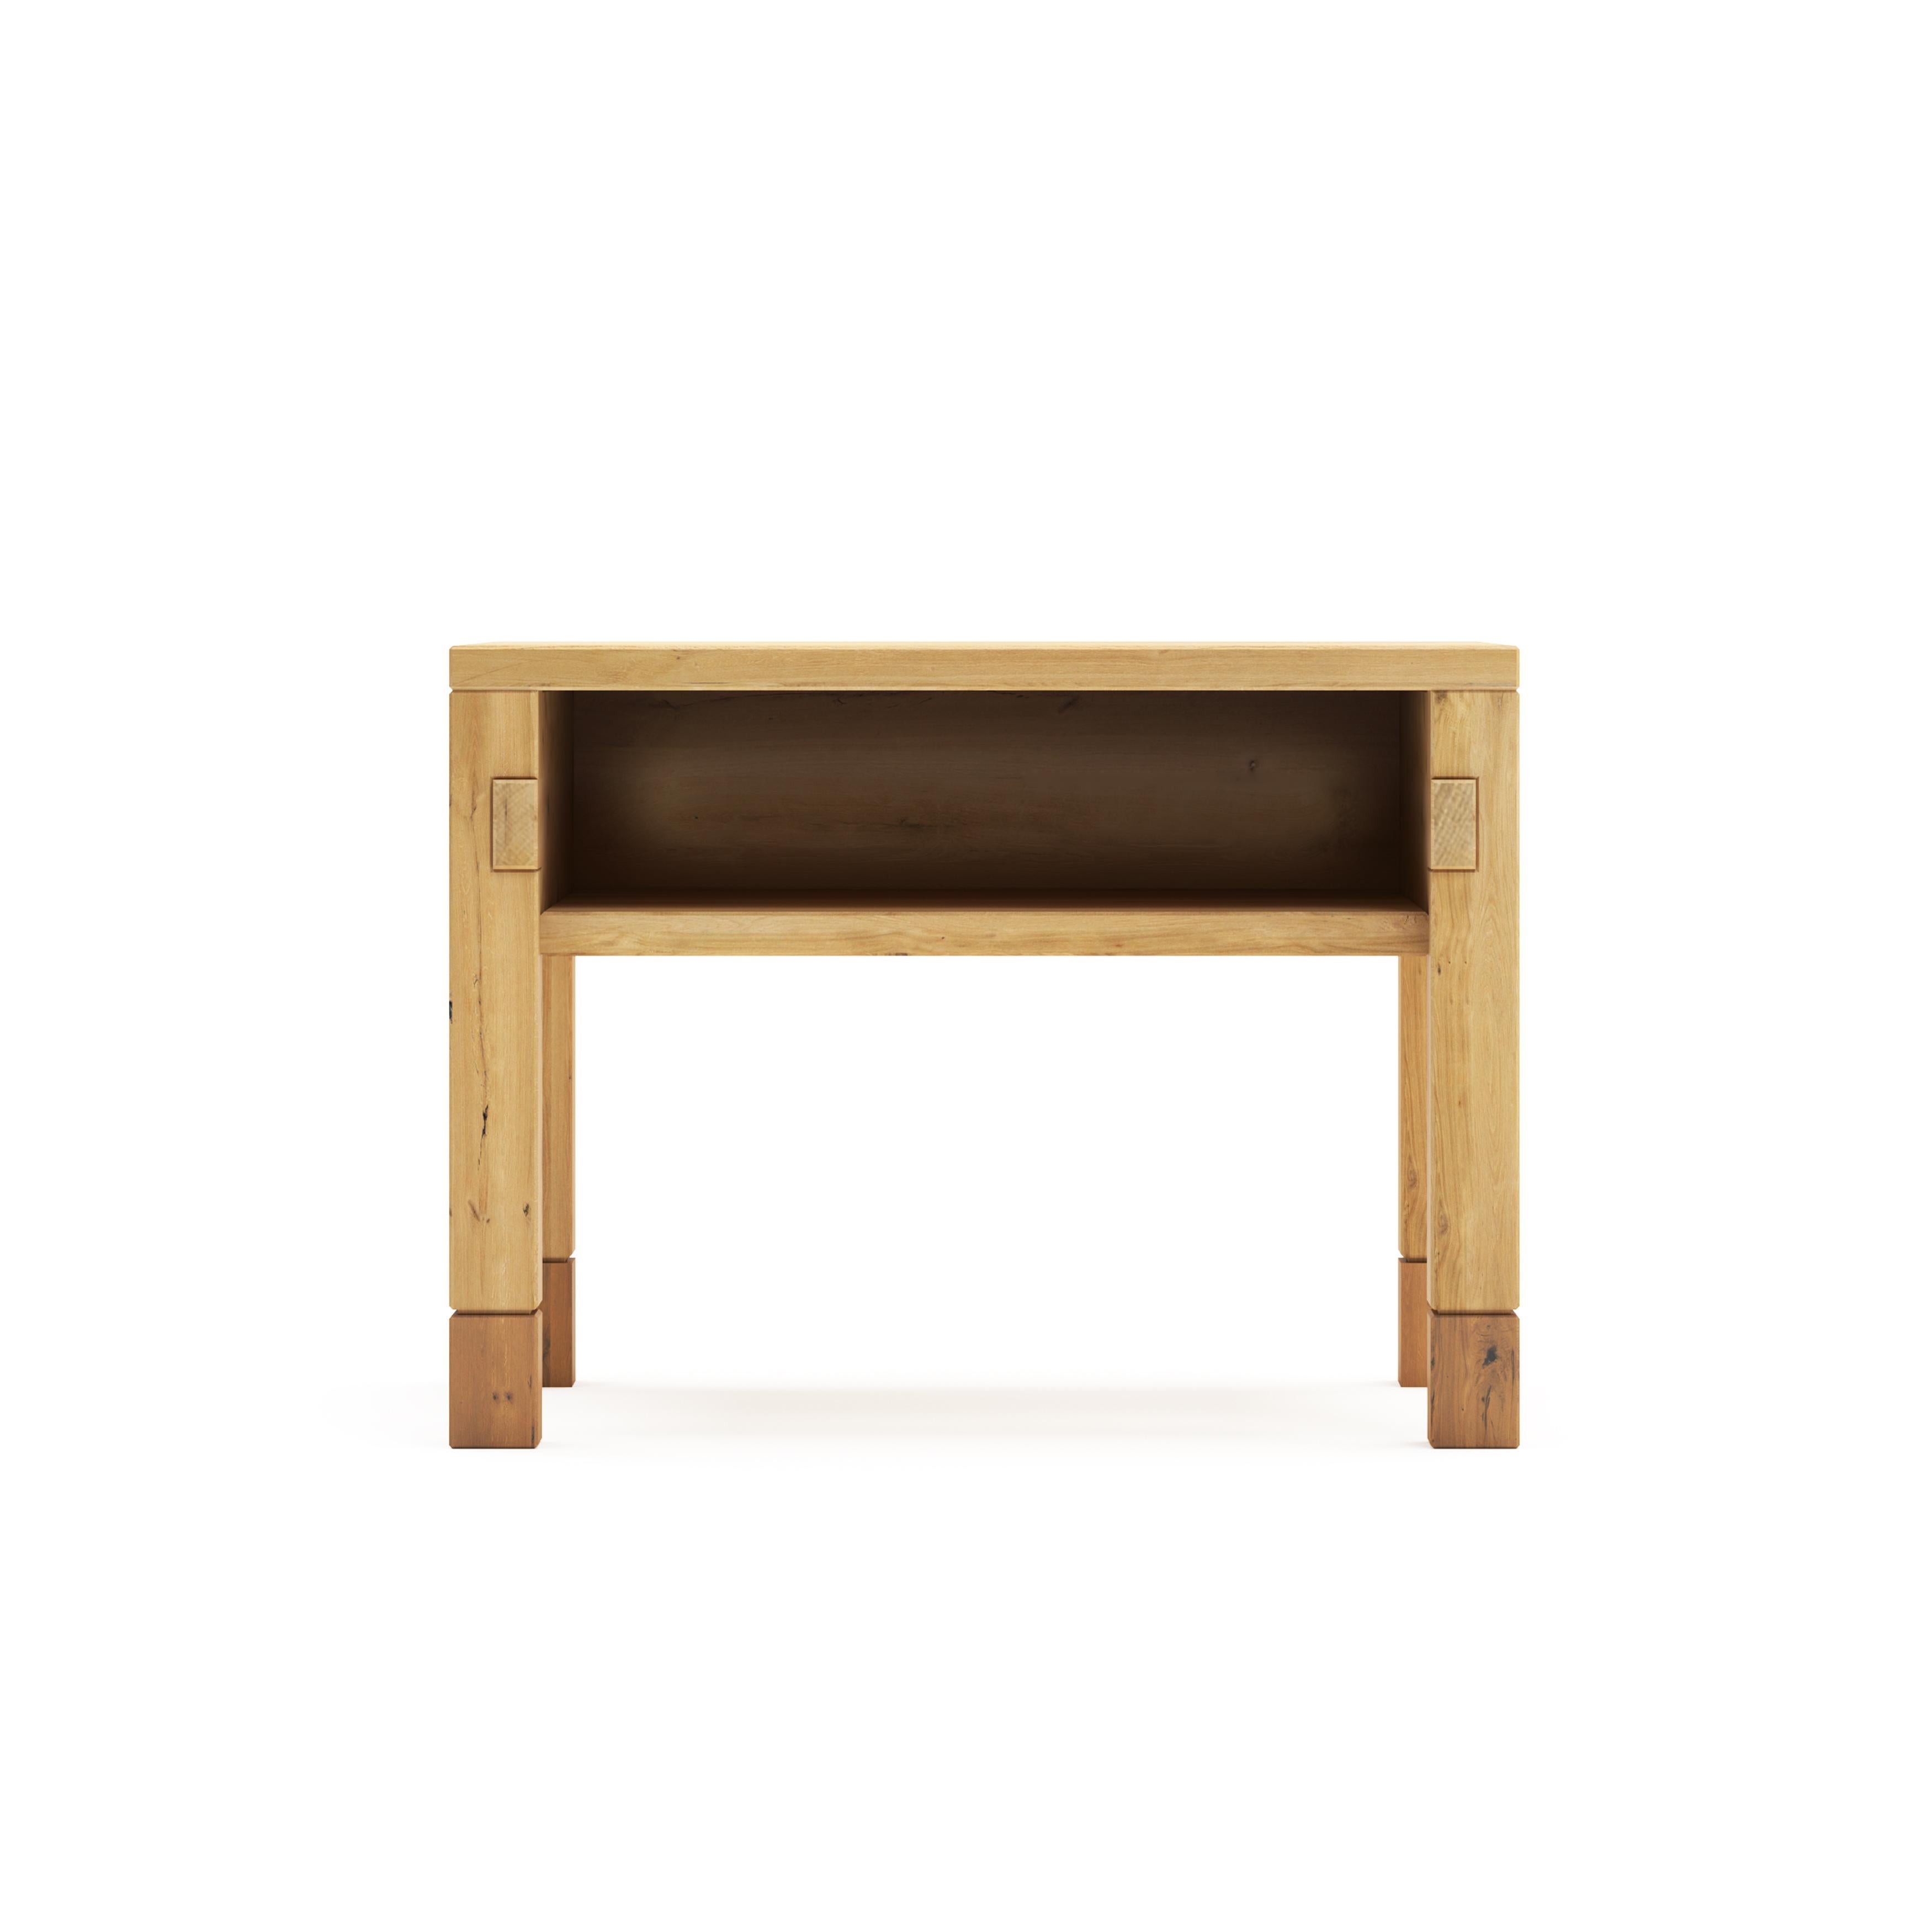 Der Dala-Bed Beistelltisch ist ein stilvolles, funktionelles Stück für jedes Schlafzimmer. Dieser schöne Tisch verfügt über eine Schublade zur Aufbewahrung und ein Design, das Ihrem Schlafzimmer einen Hauch von Schönheit verleiht

Alle Tektōn-Stücke